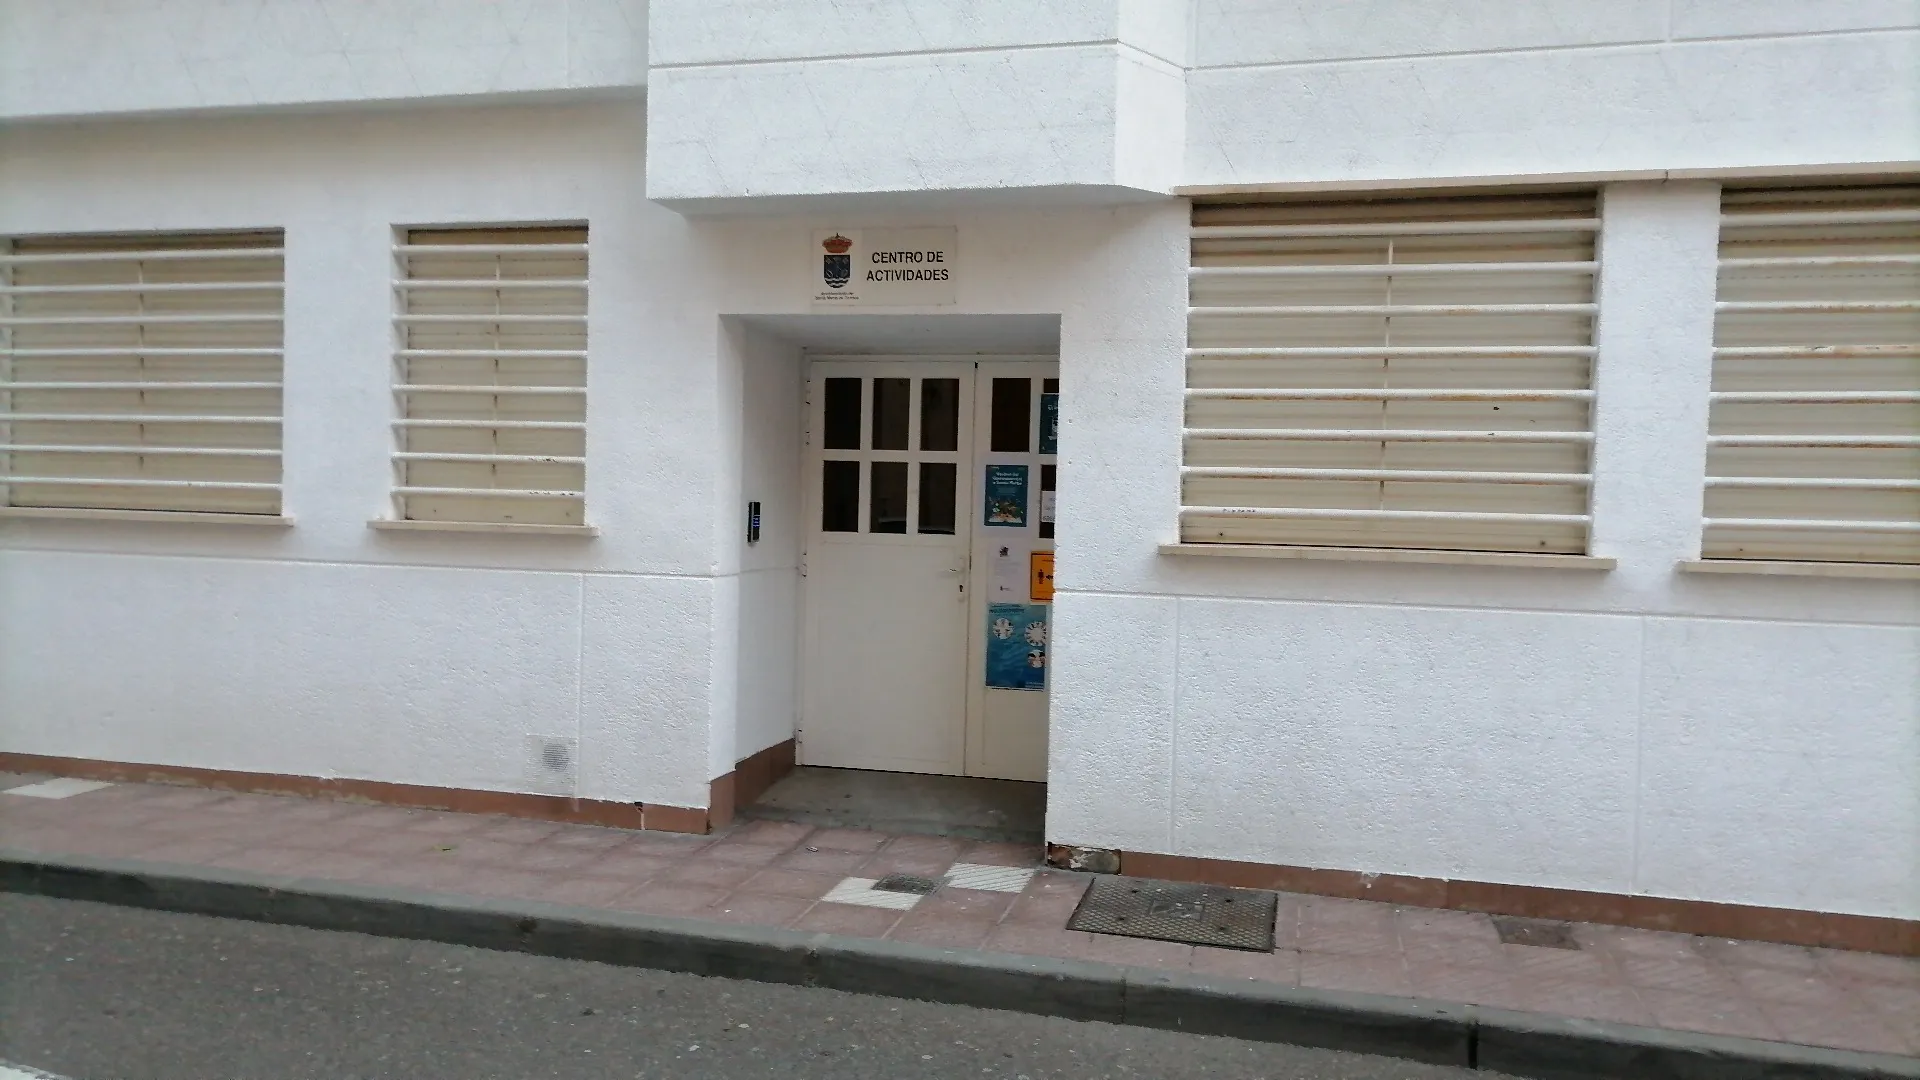 Photo showing: Fachada y entrada del Centro Municipal de Actividades del municipio de Santa Marta de Tormes